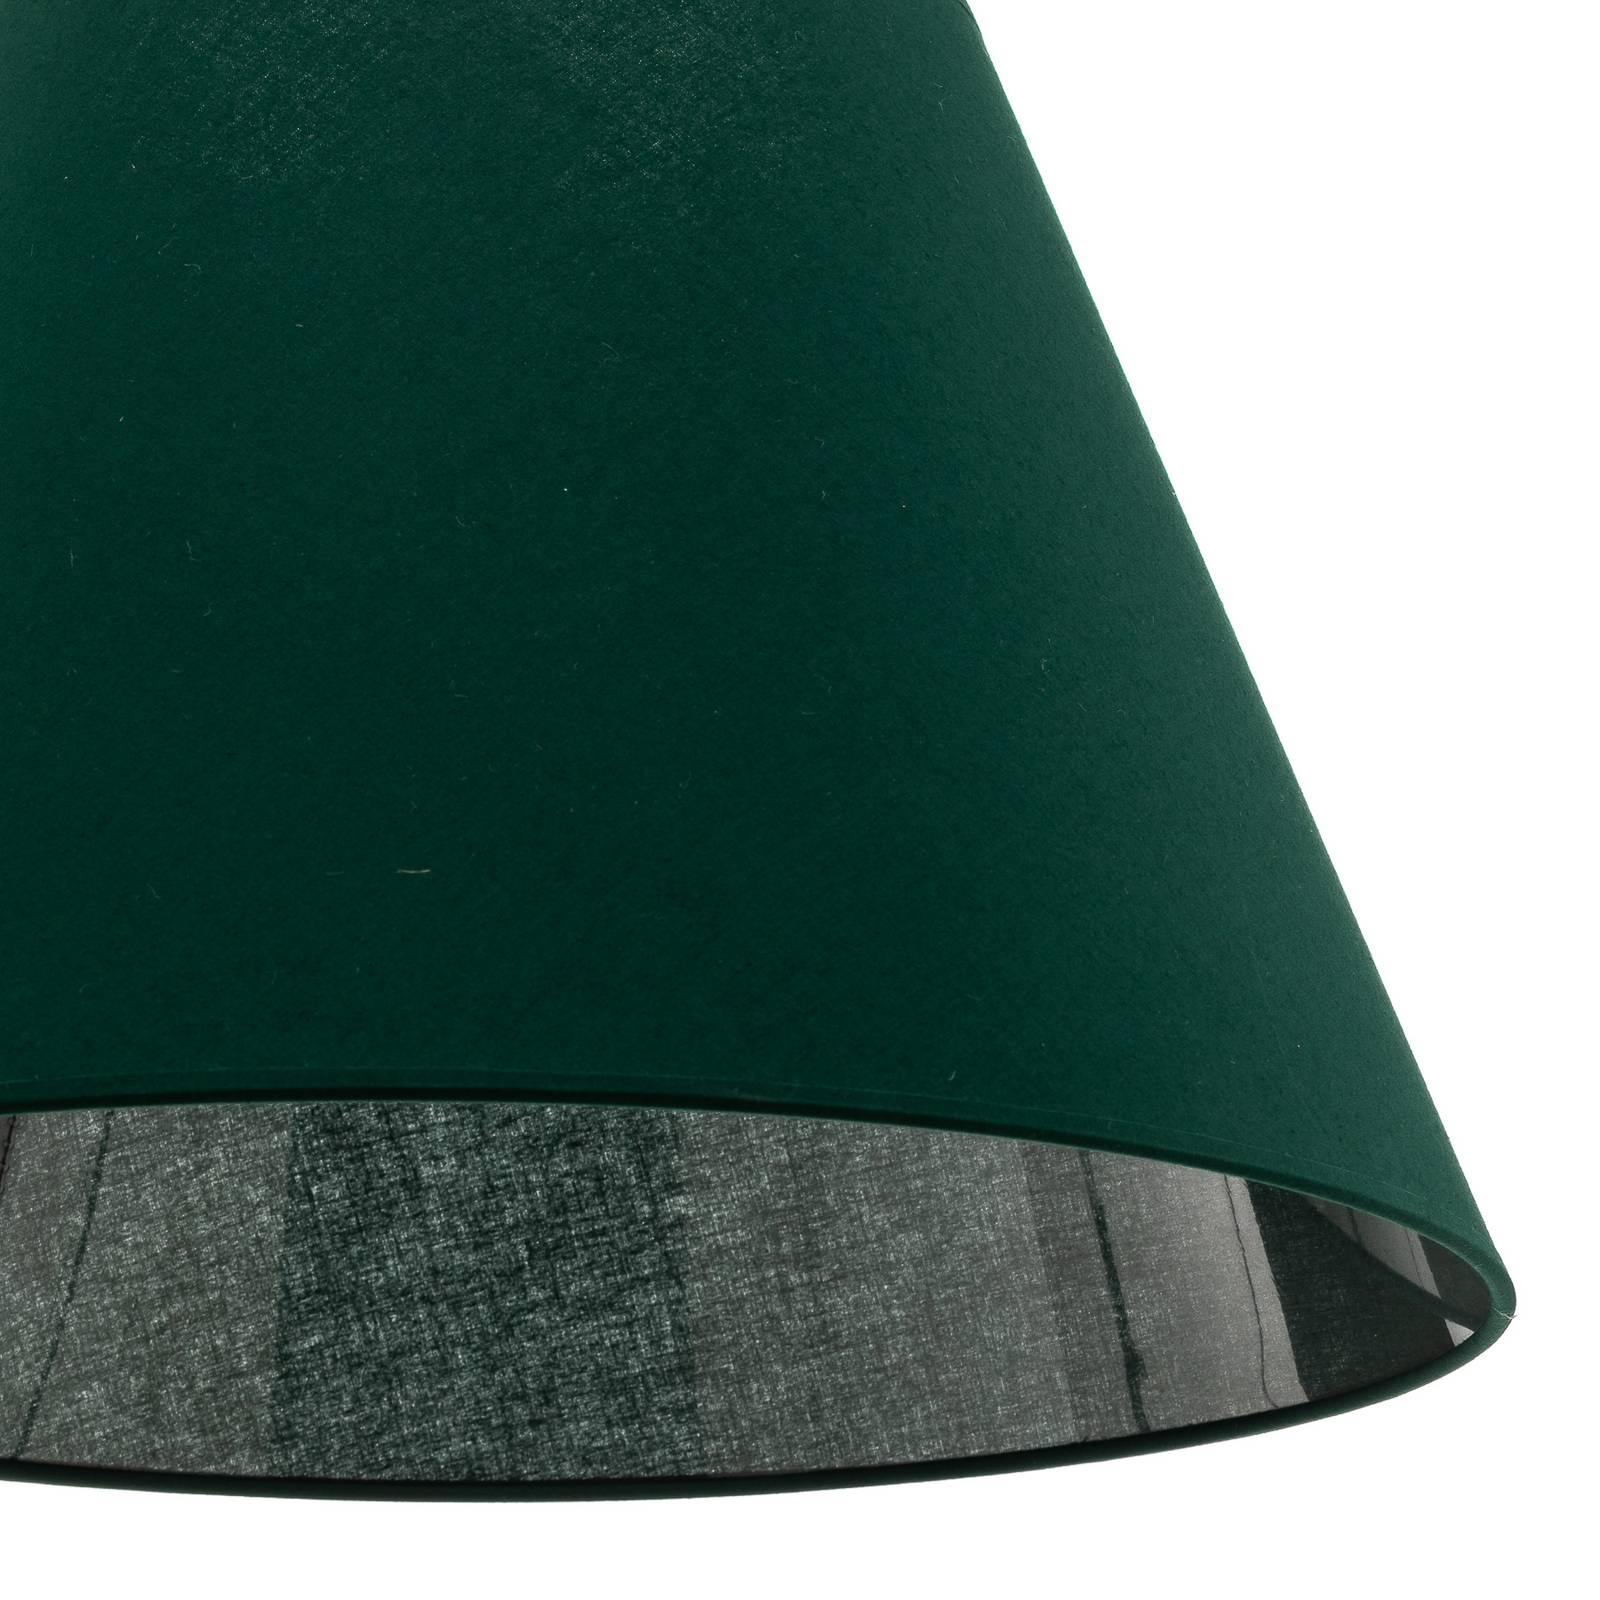 Anna lámpaernyő, függőlámpákhoz, zöld